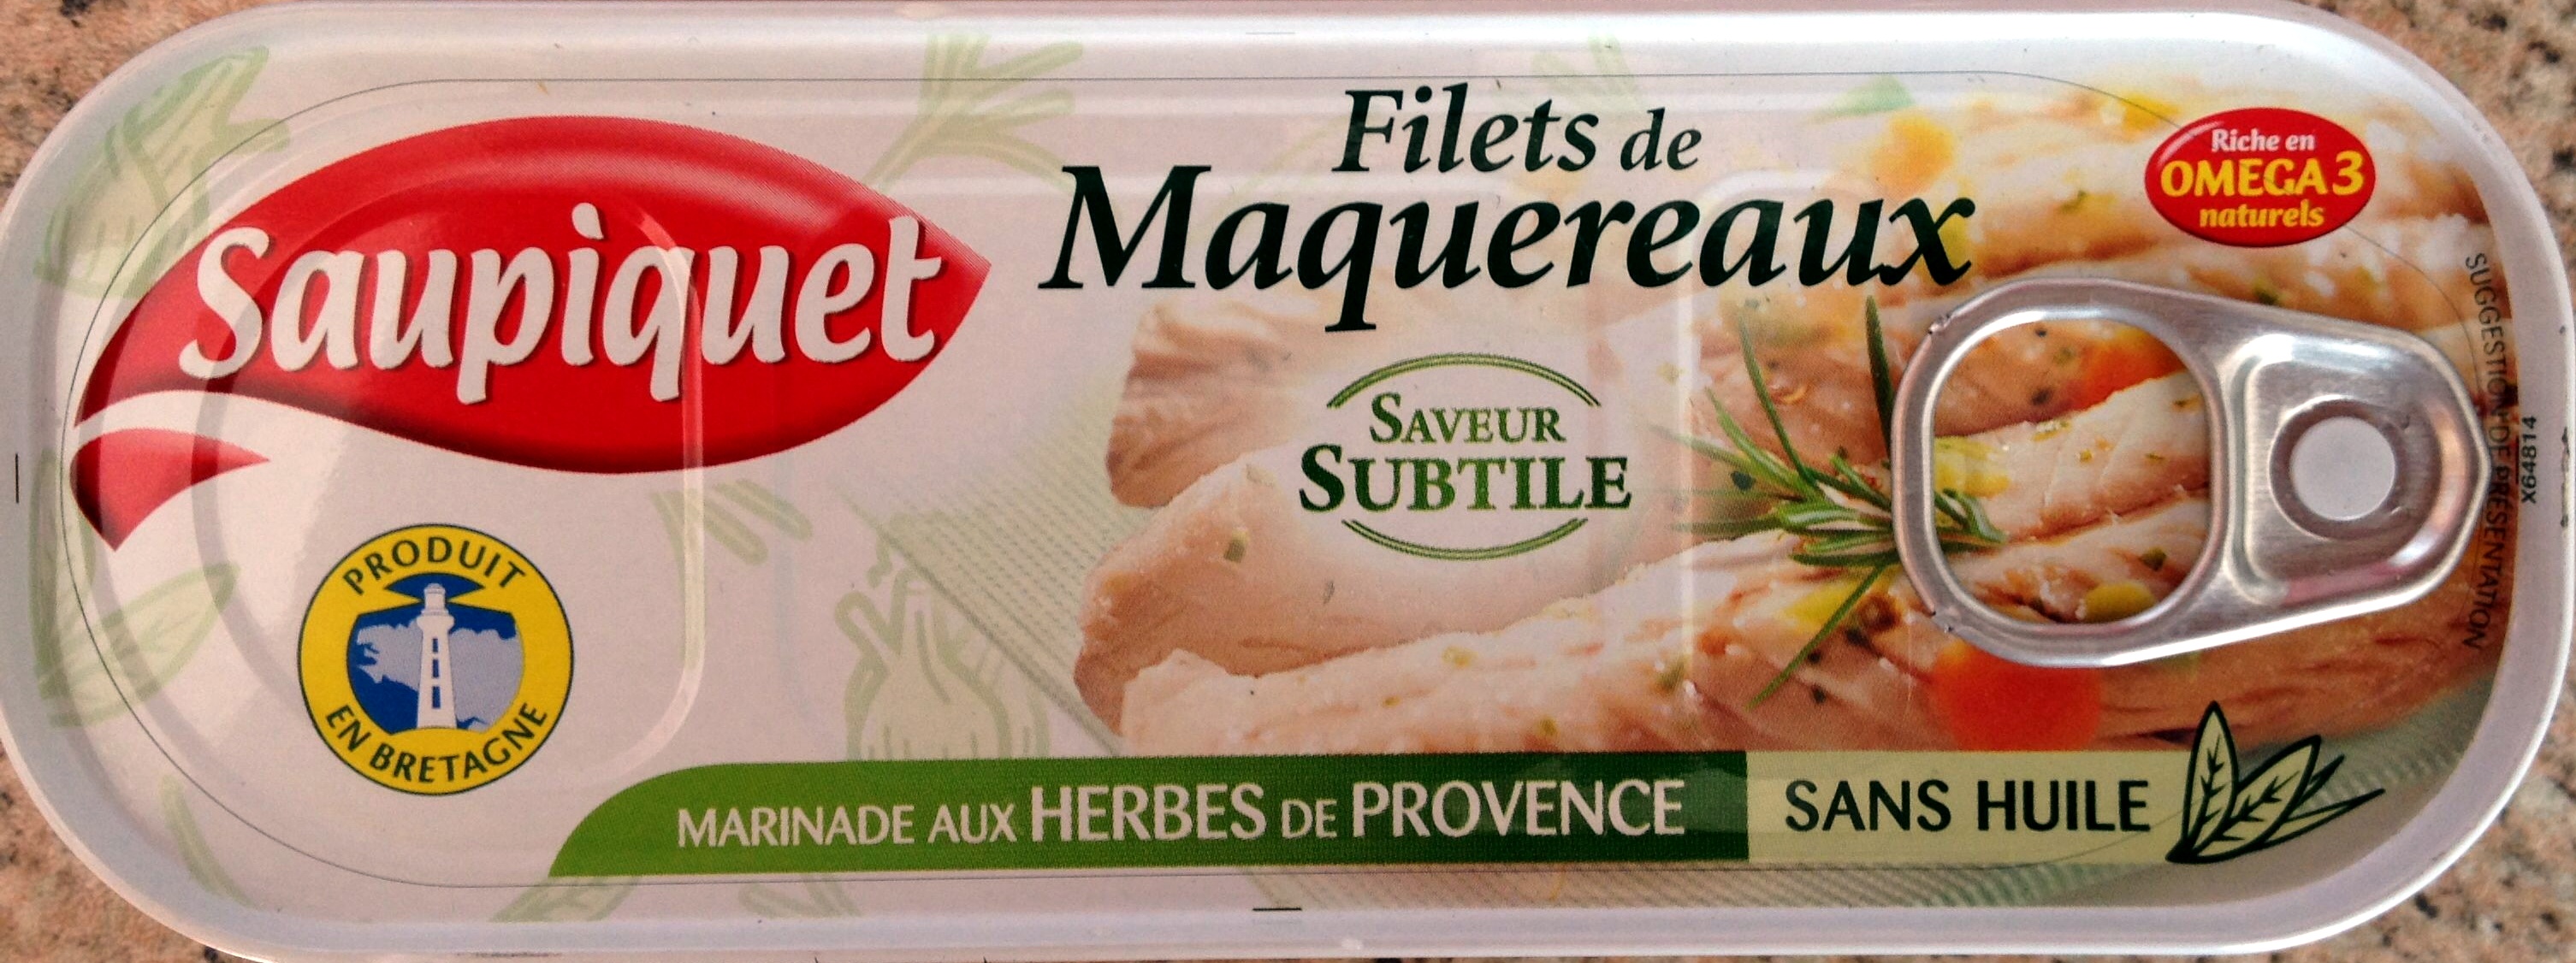 Filets de Maquereaux (Marinade aux Herbes de Provence) - Producto - fr